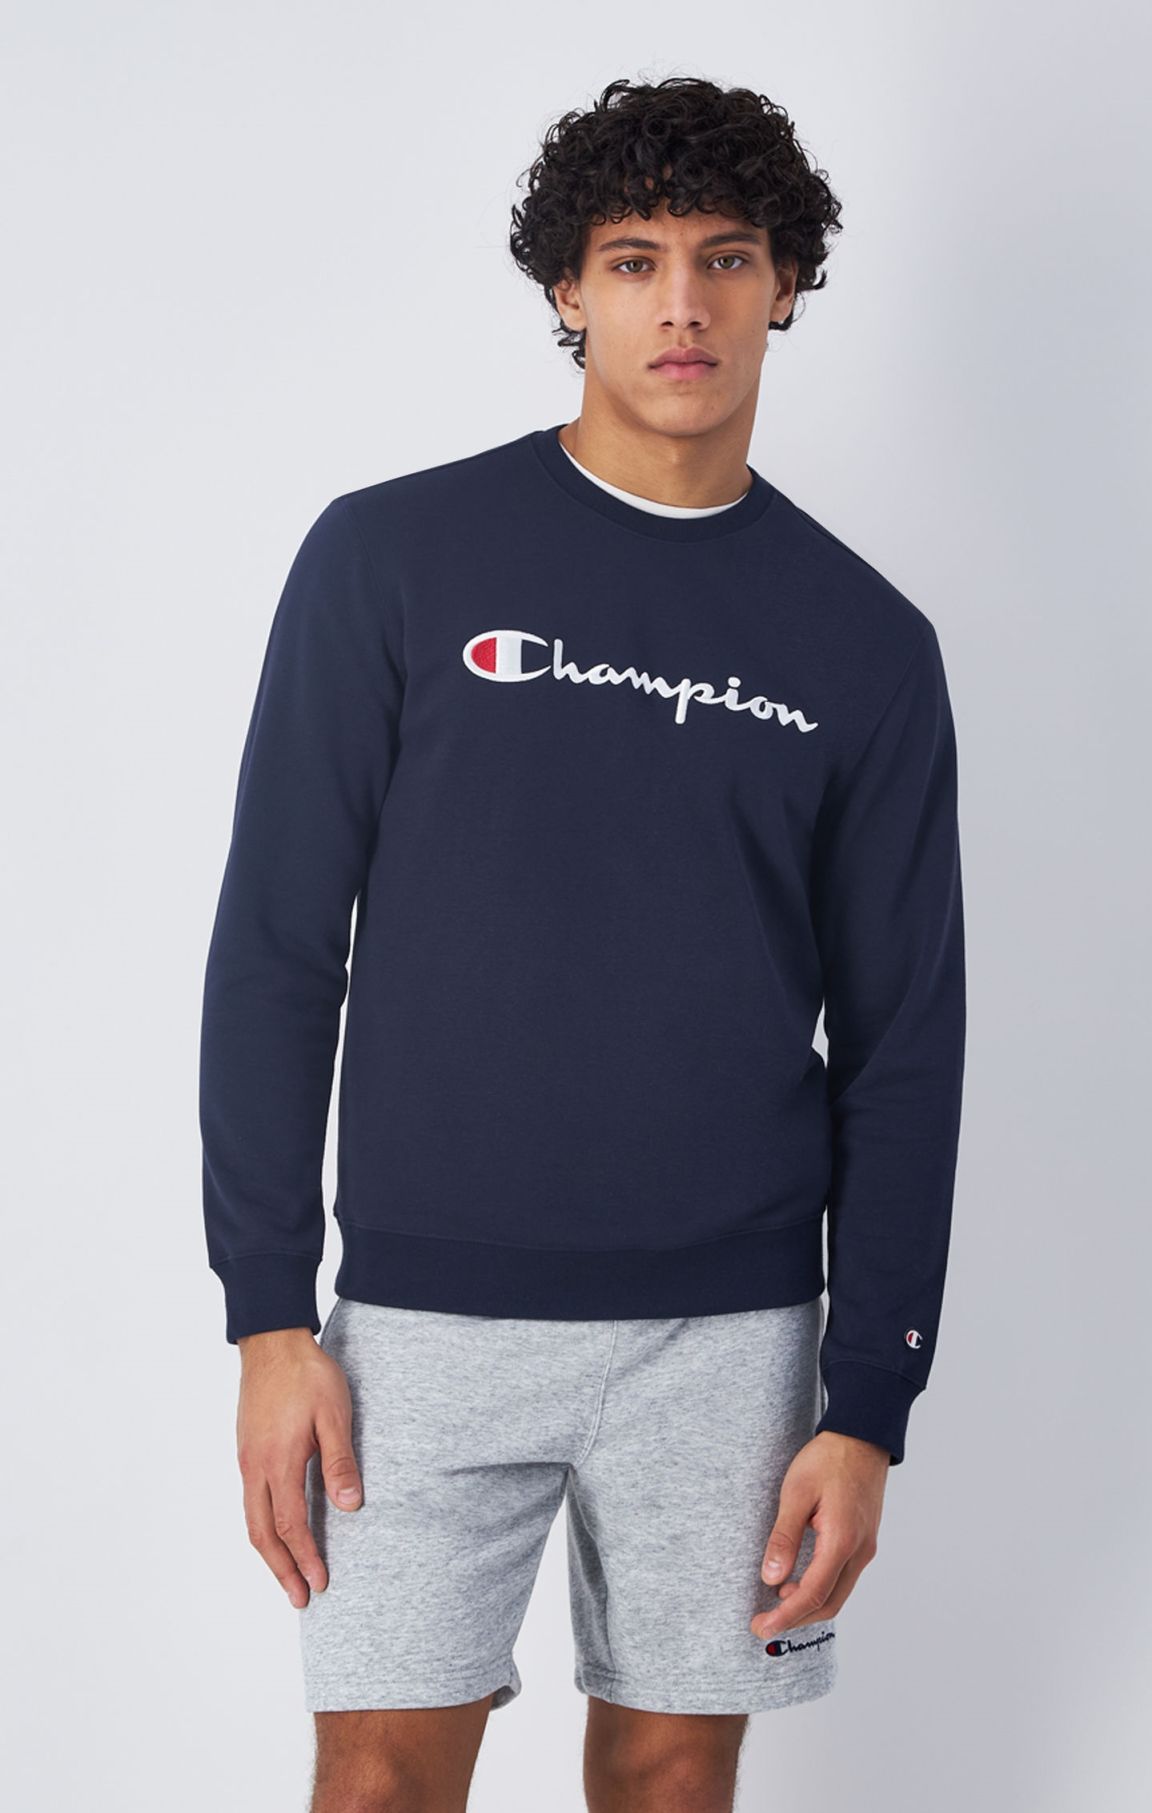 Sweatshirt mit großem Champion-Sticklogo